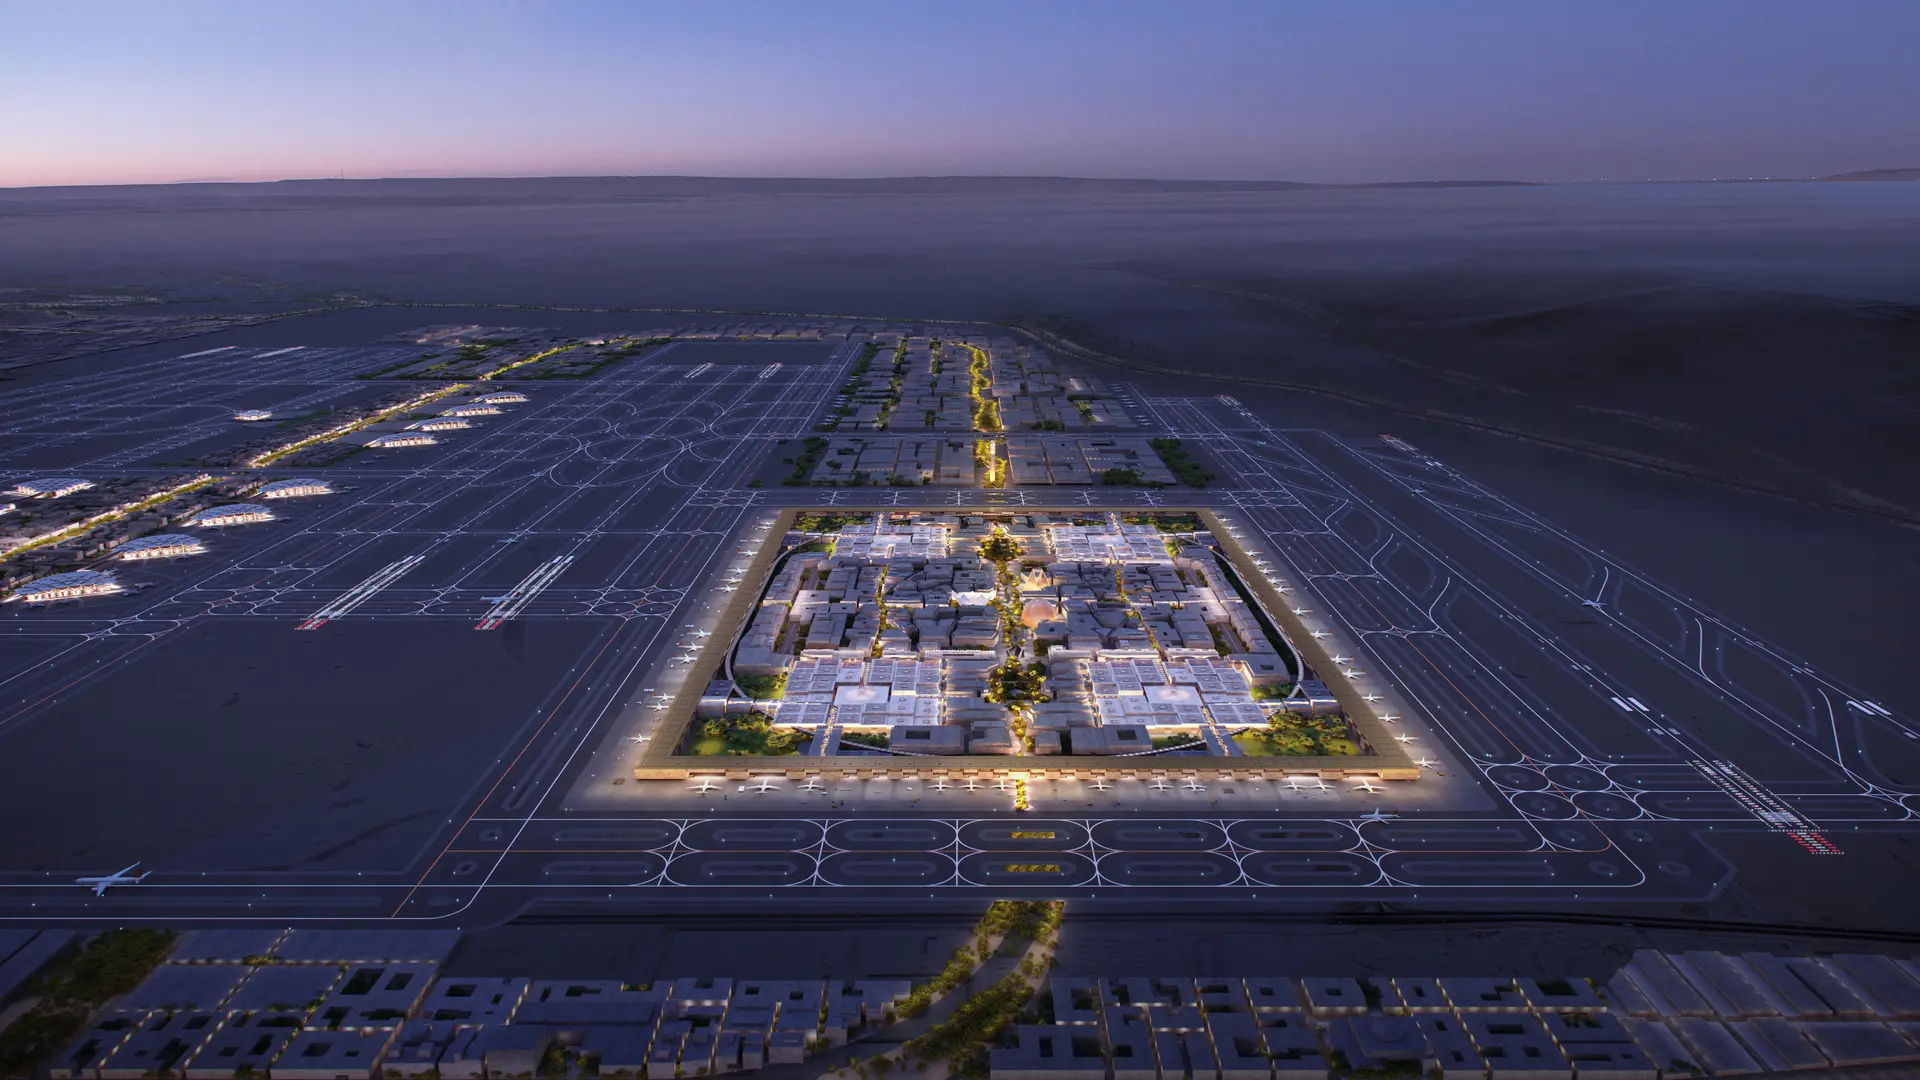 Novos projetos do Aeroporto Internacional King Salman revelados pela Foster+Partners - Arch2O.com